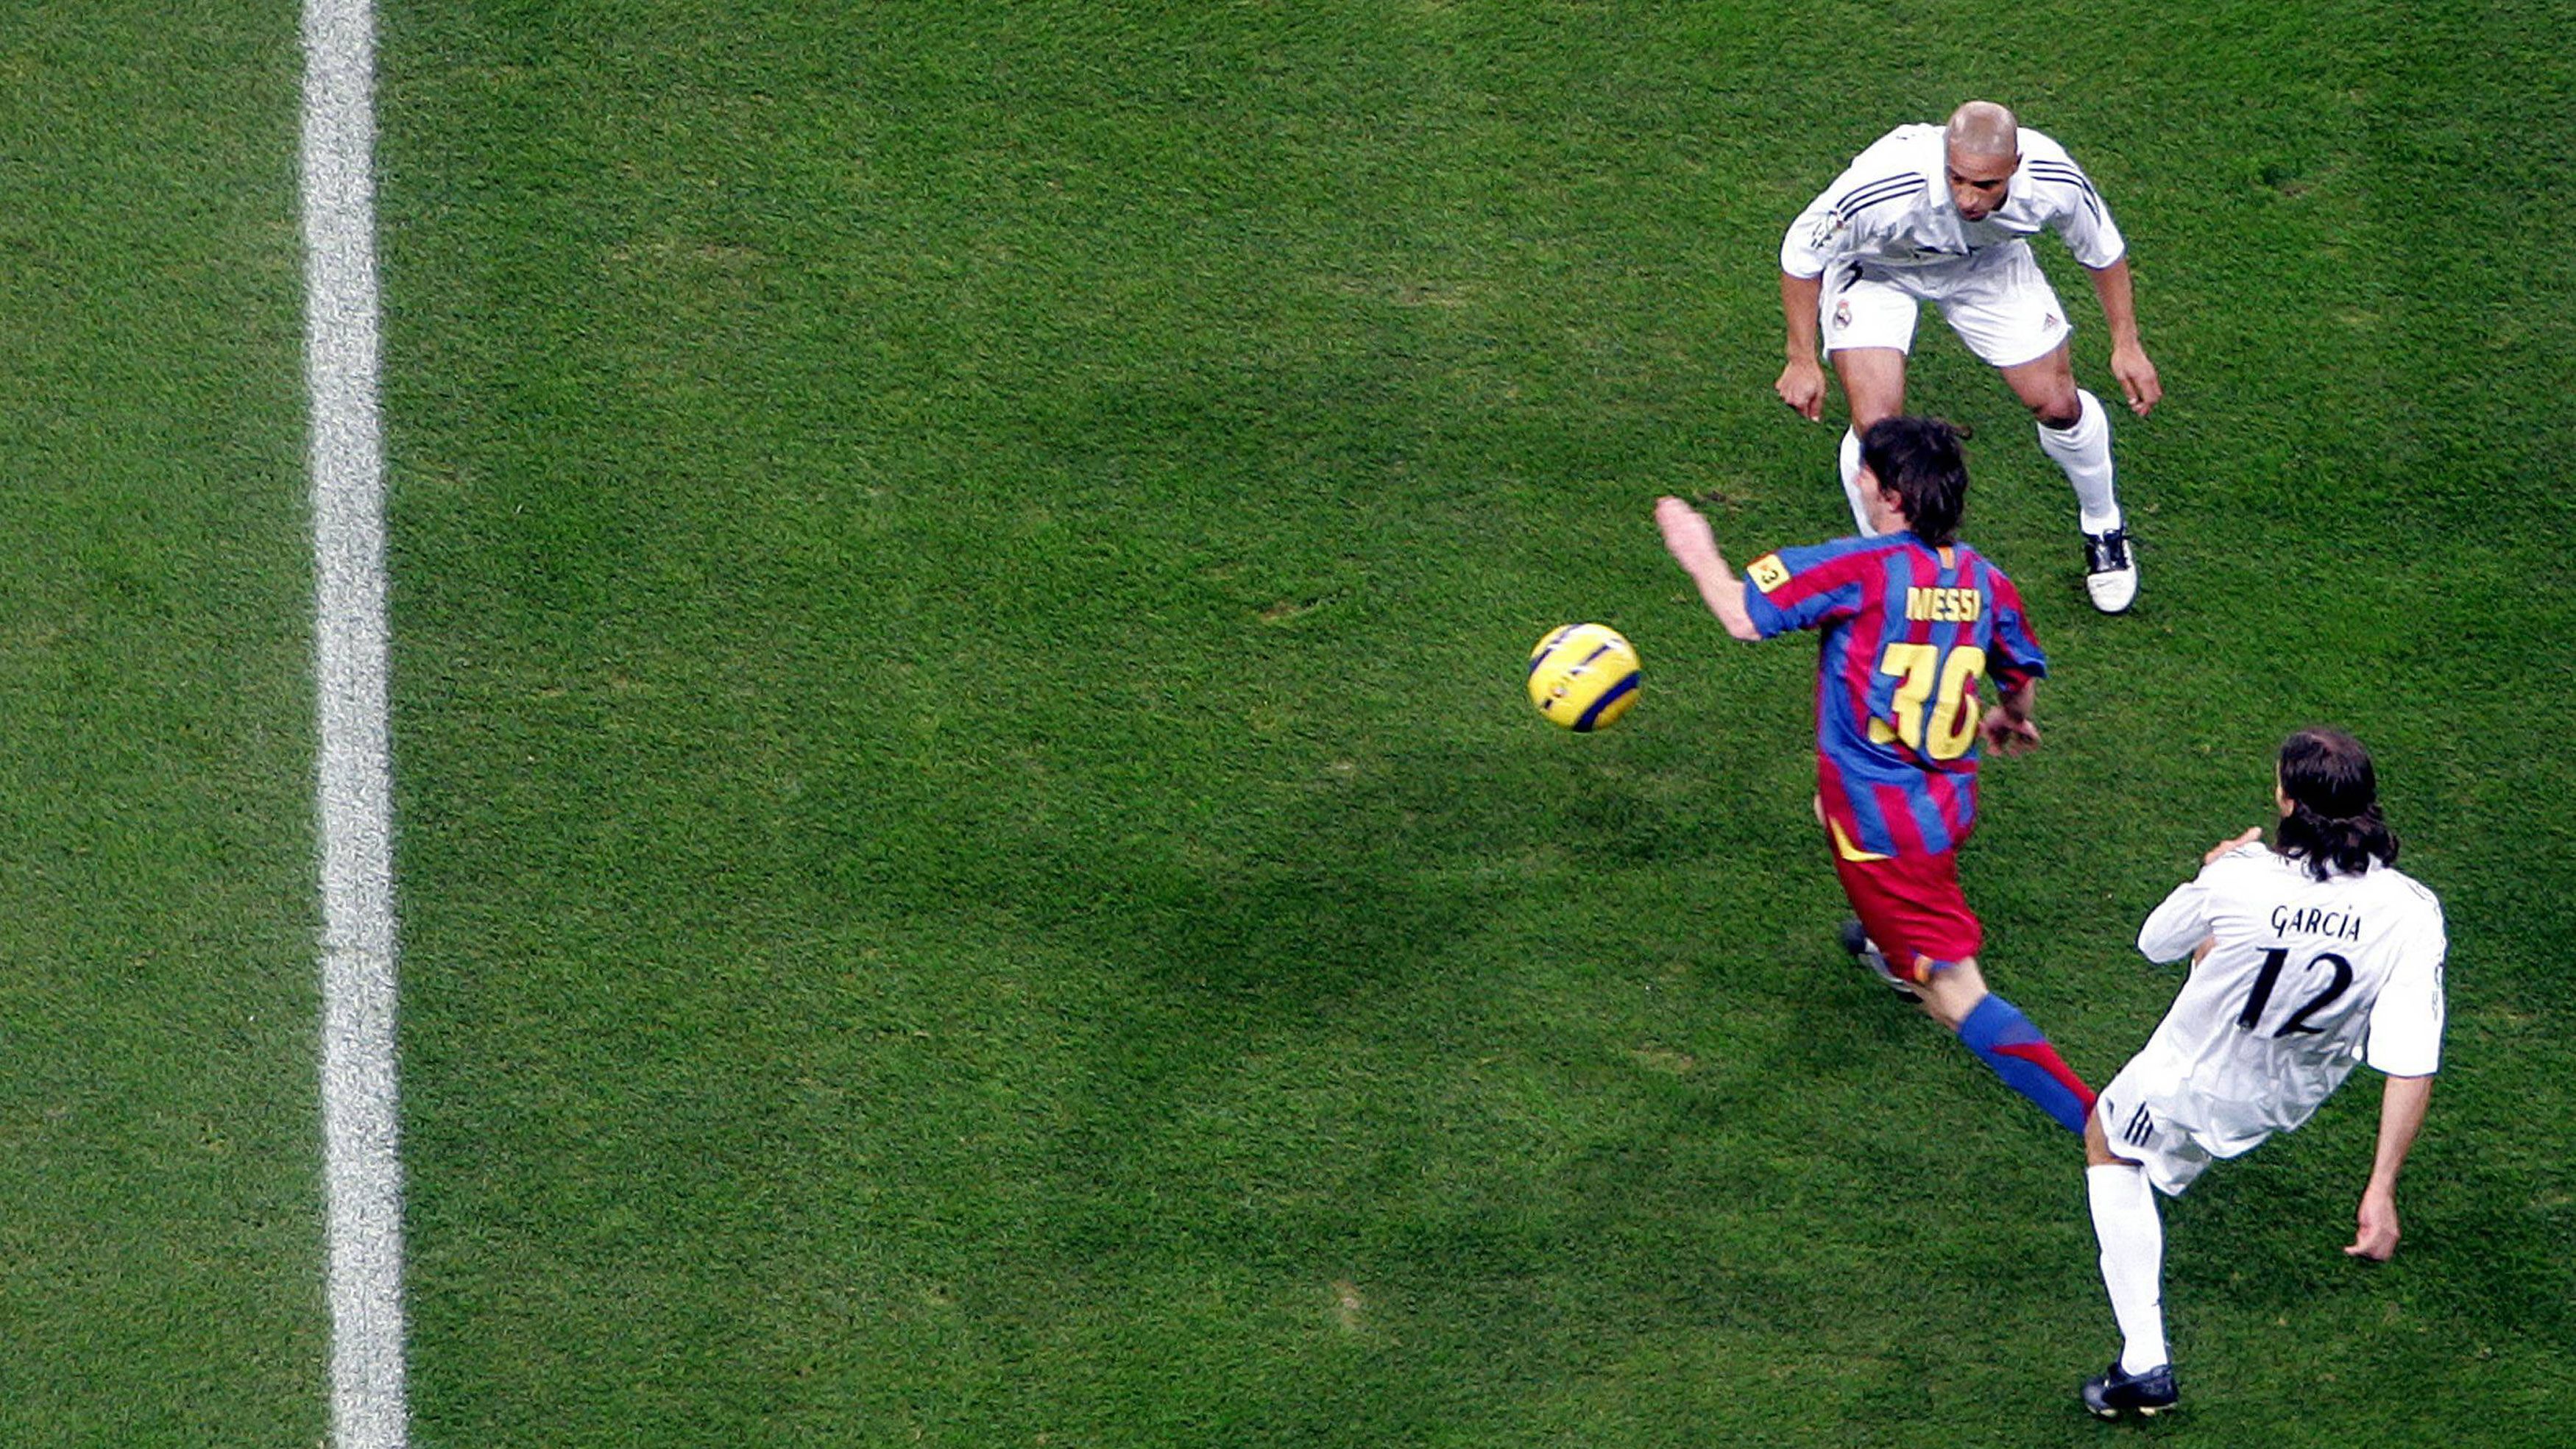 
                <strong>19. November 2005: Erster "Clasico"</strong><br>
                Im Santiago Bernabéu erlebt Messi seinen ersten "Clasico". Ausnahmsweise schießt der damals 19-Jährige mal kein Tor, bereitet aber das 1:0 von Samuel Eto'o vor. Barca gewinnt das Spiel am Ende mit 3:0. 
              